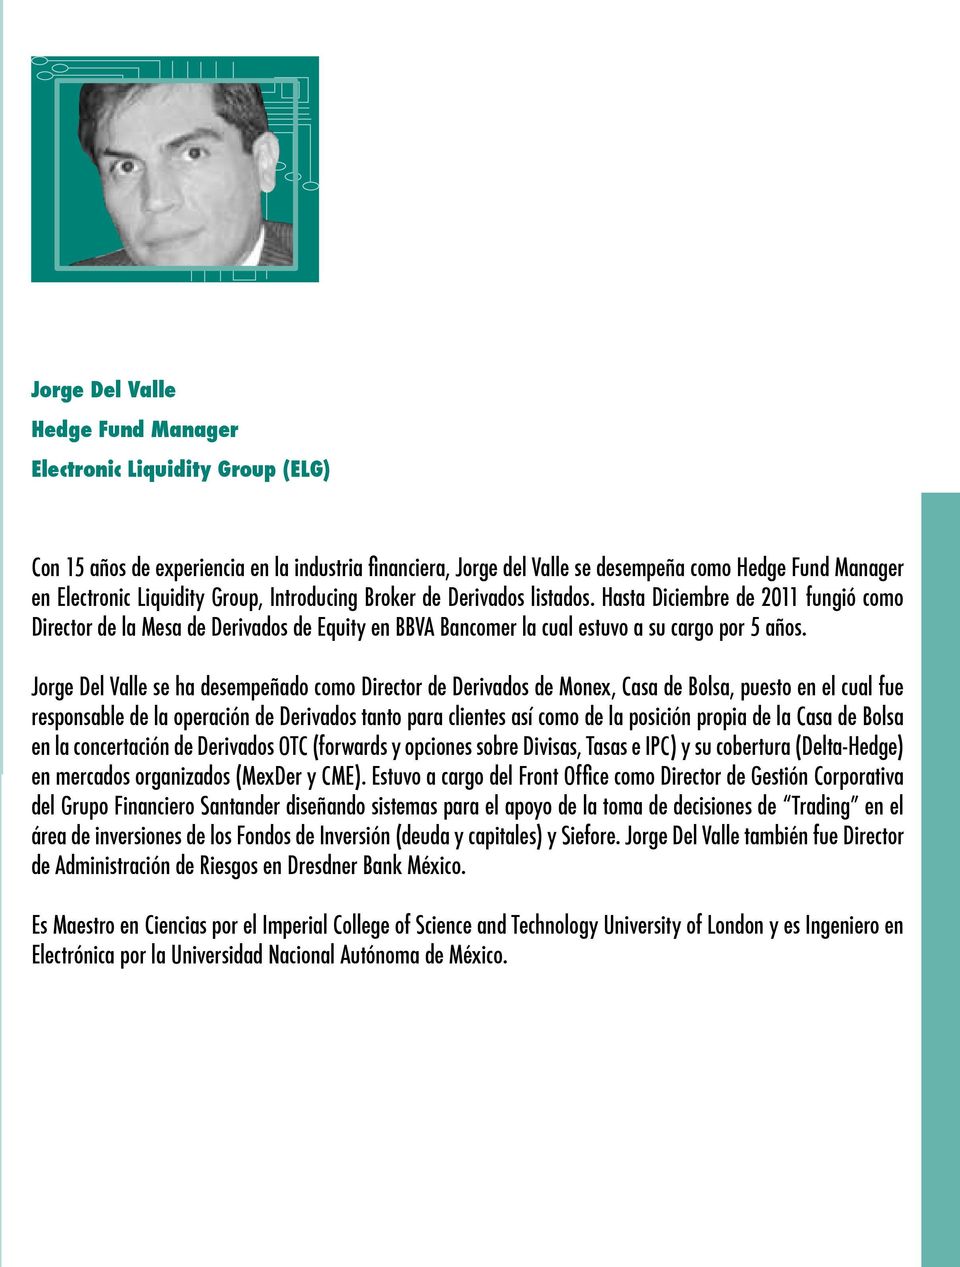 Jorge Del Valle se ha desempeñado como Director de Derivados de Monex, Casa de Bolsa, puesto en el cual fue responsable de la operación de Derivados tanto para clientes así como de la posición propia